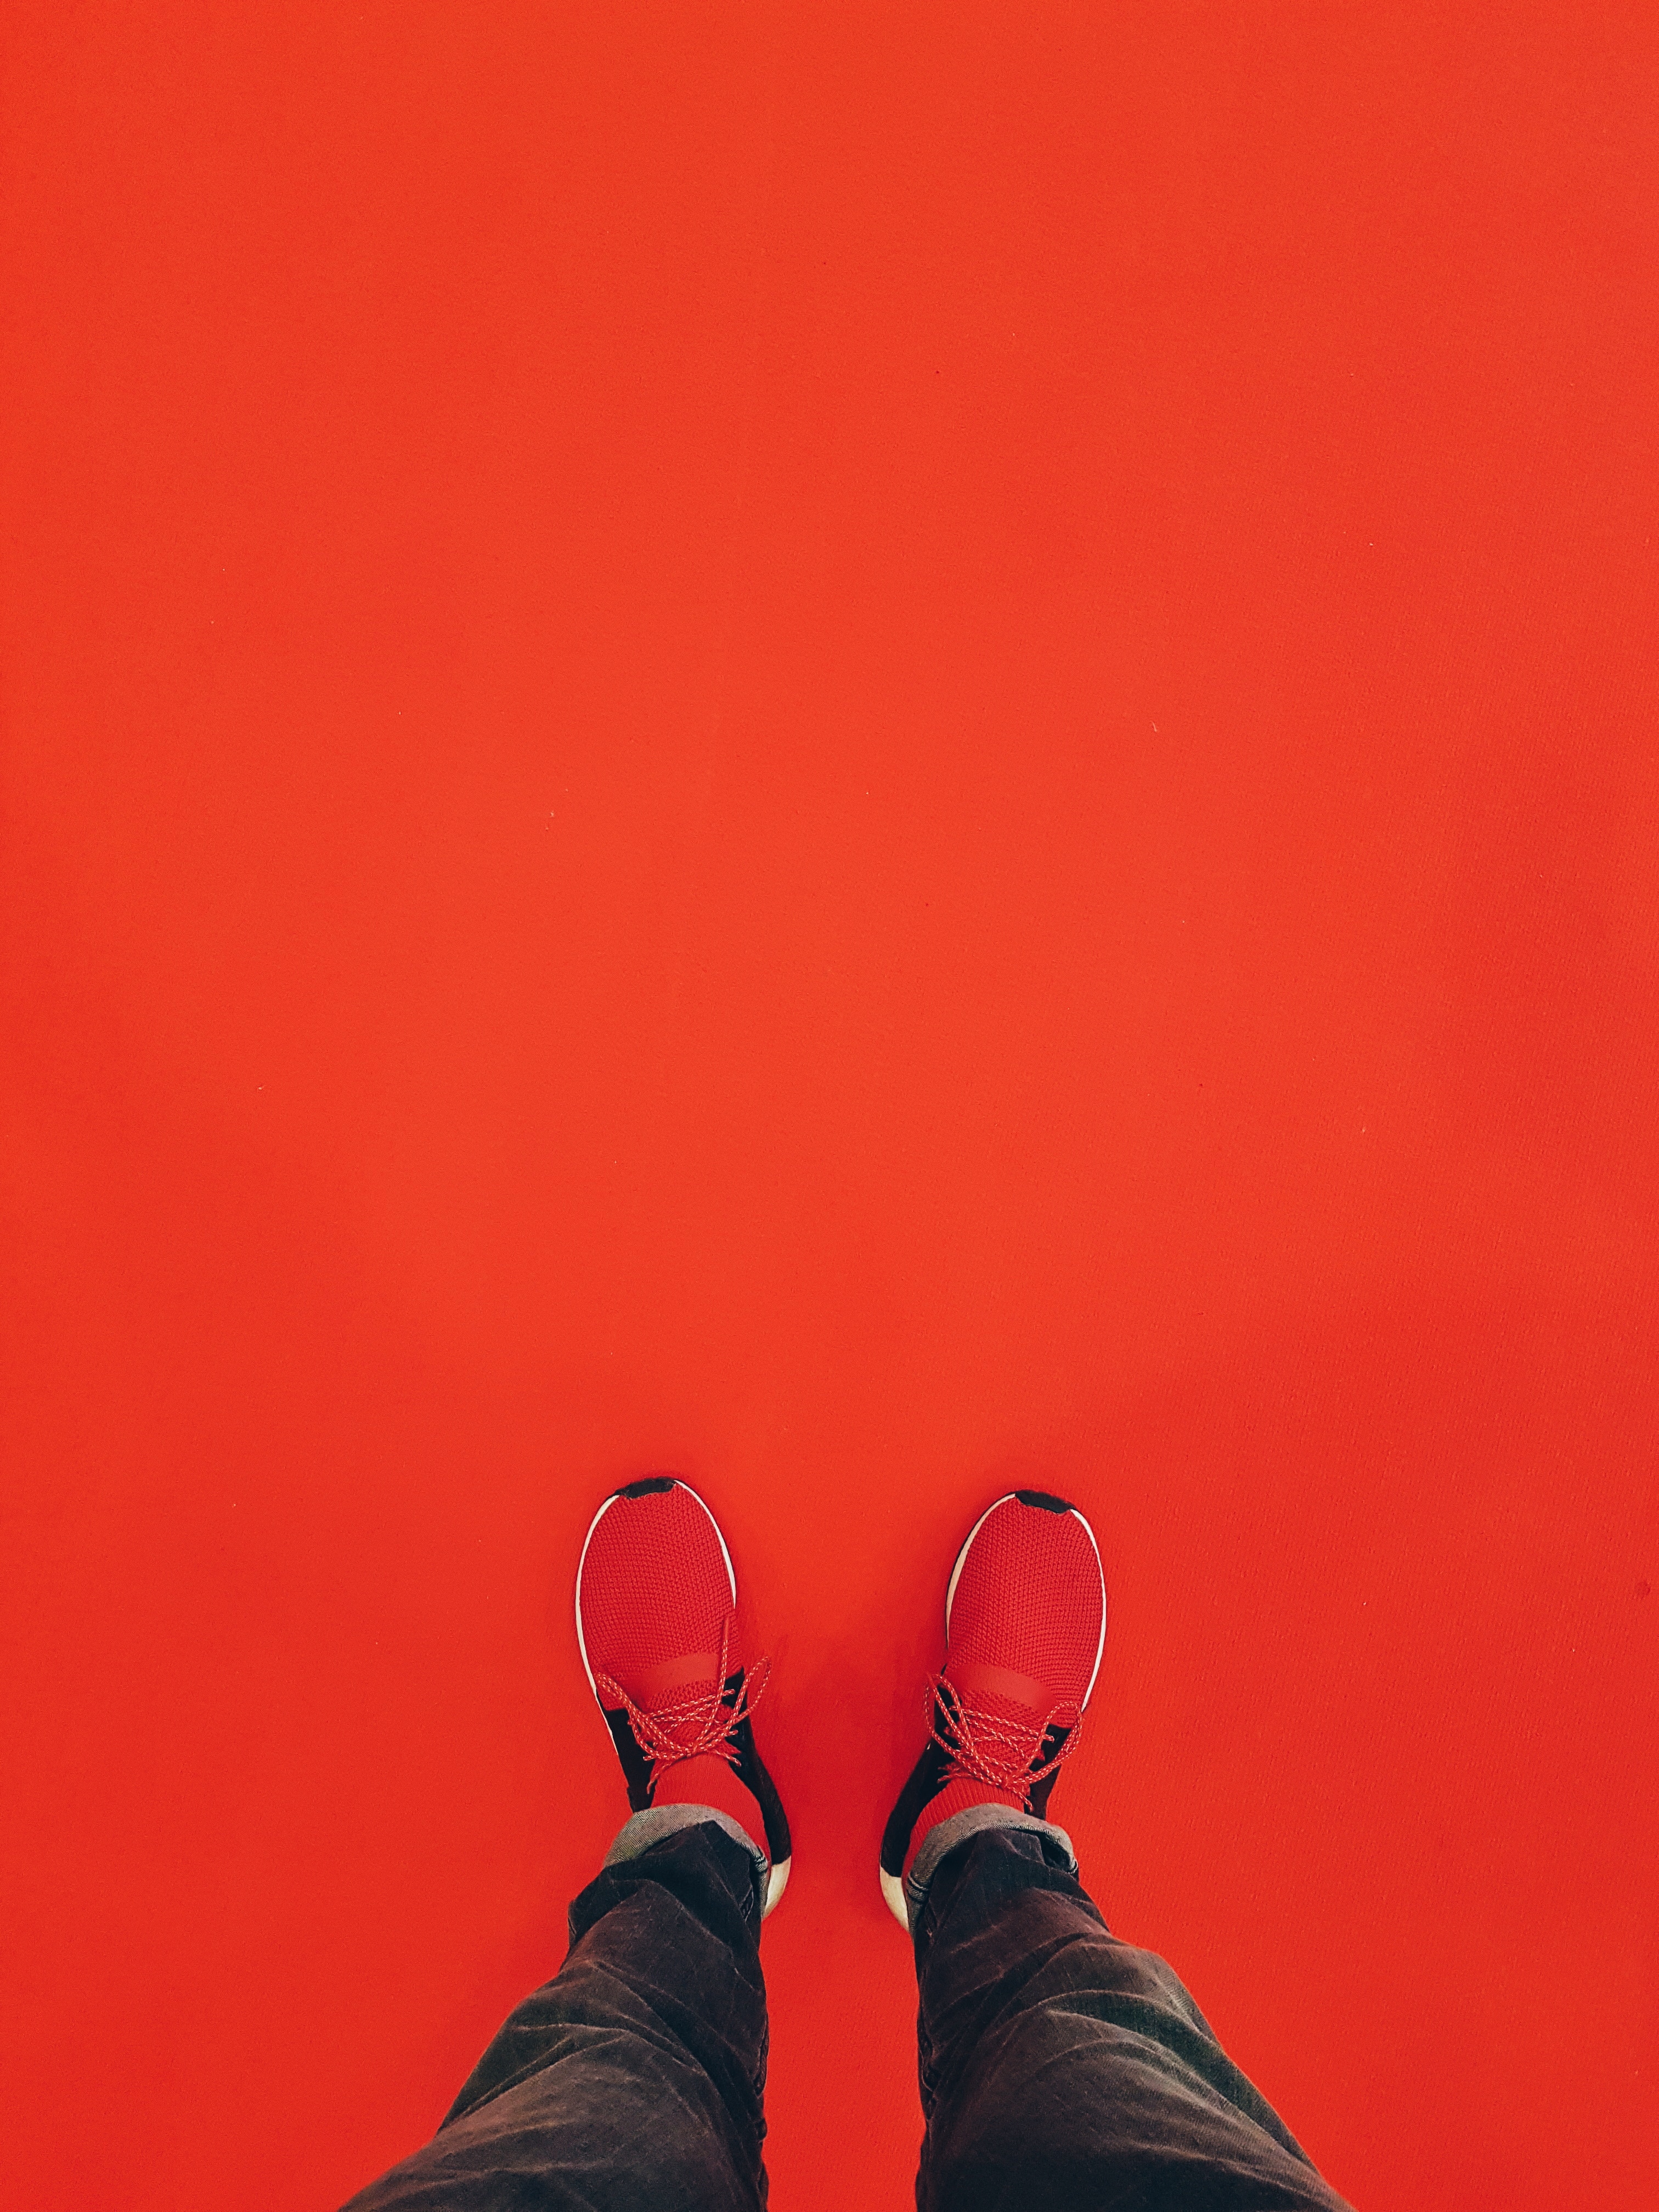 32k Wallpaper Sneakers legs, minimalism, red